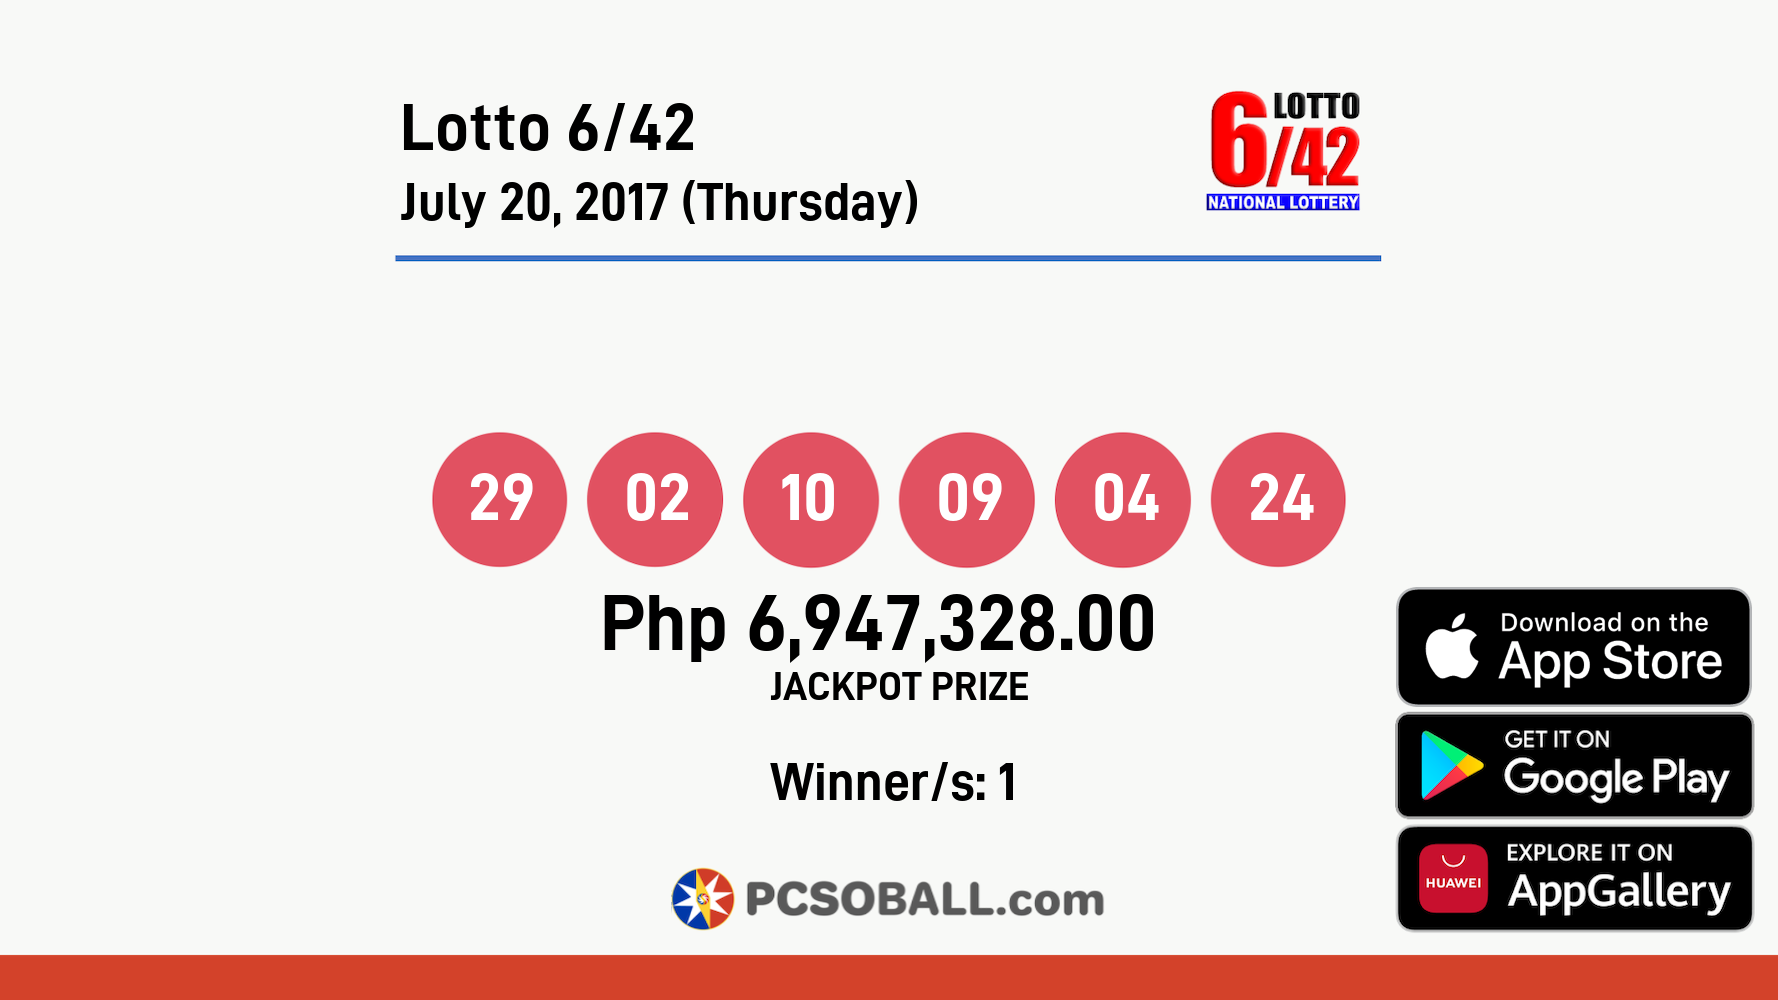 Lotto 6/42 July 20, 2017 (Thursday) Result